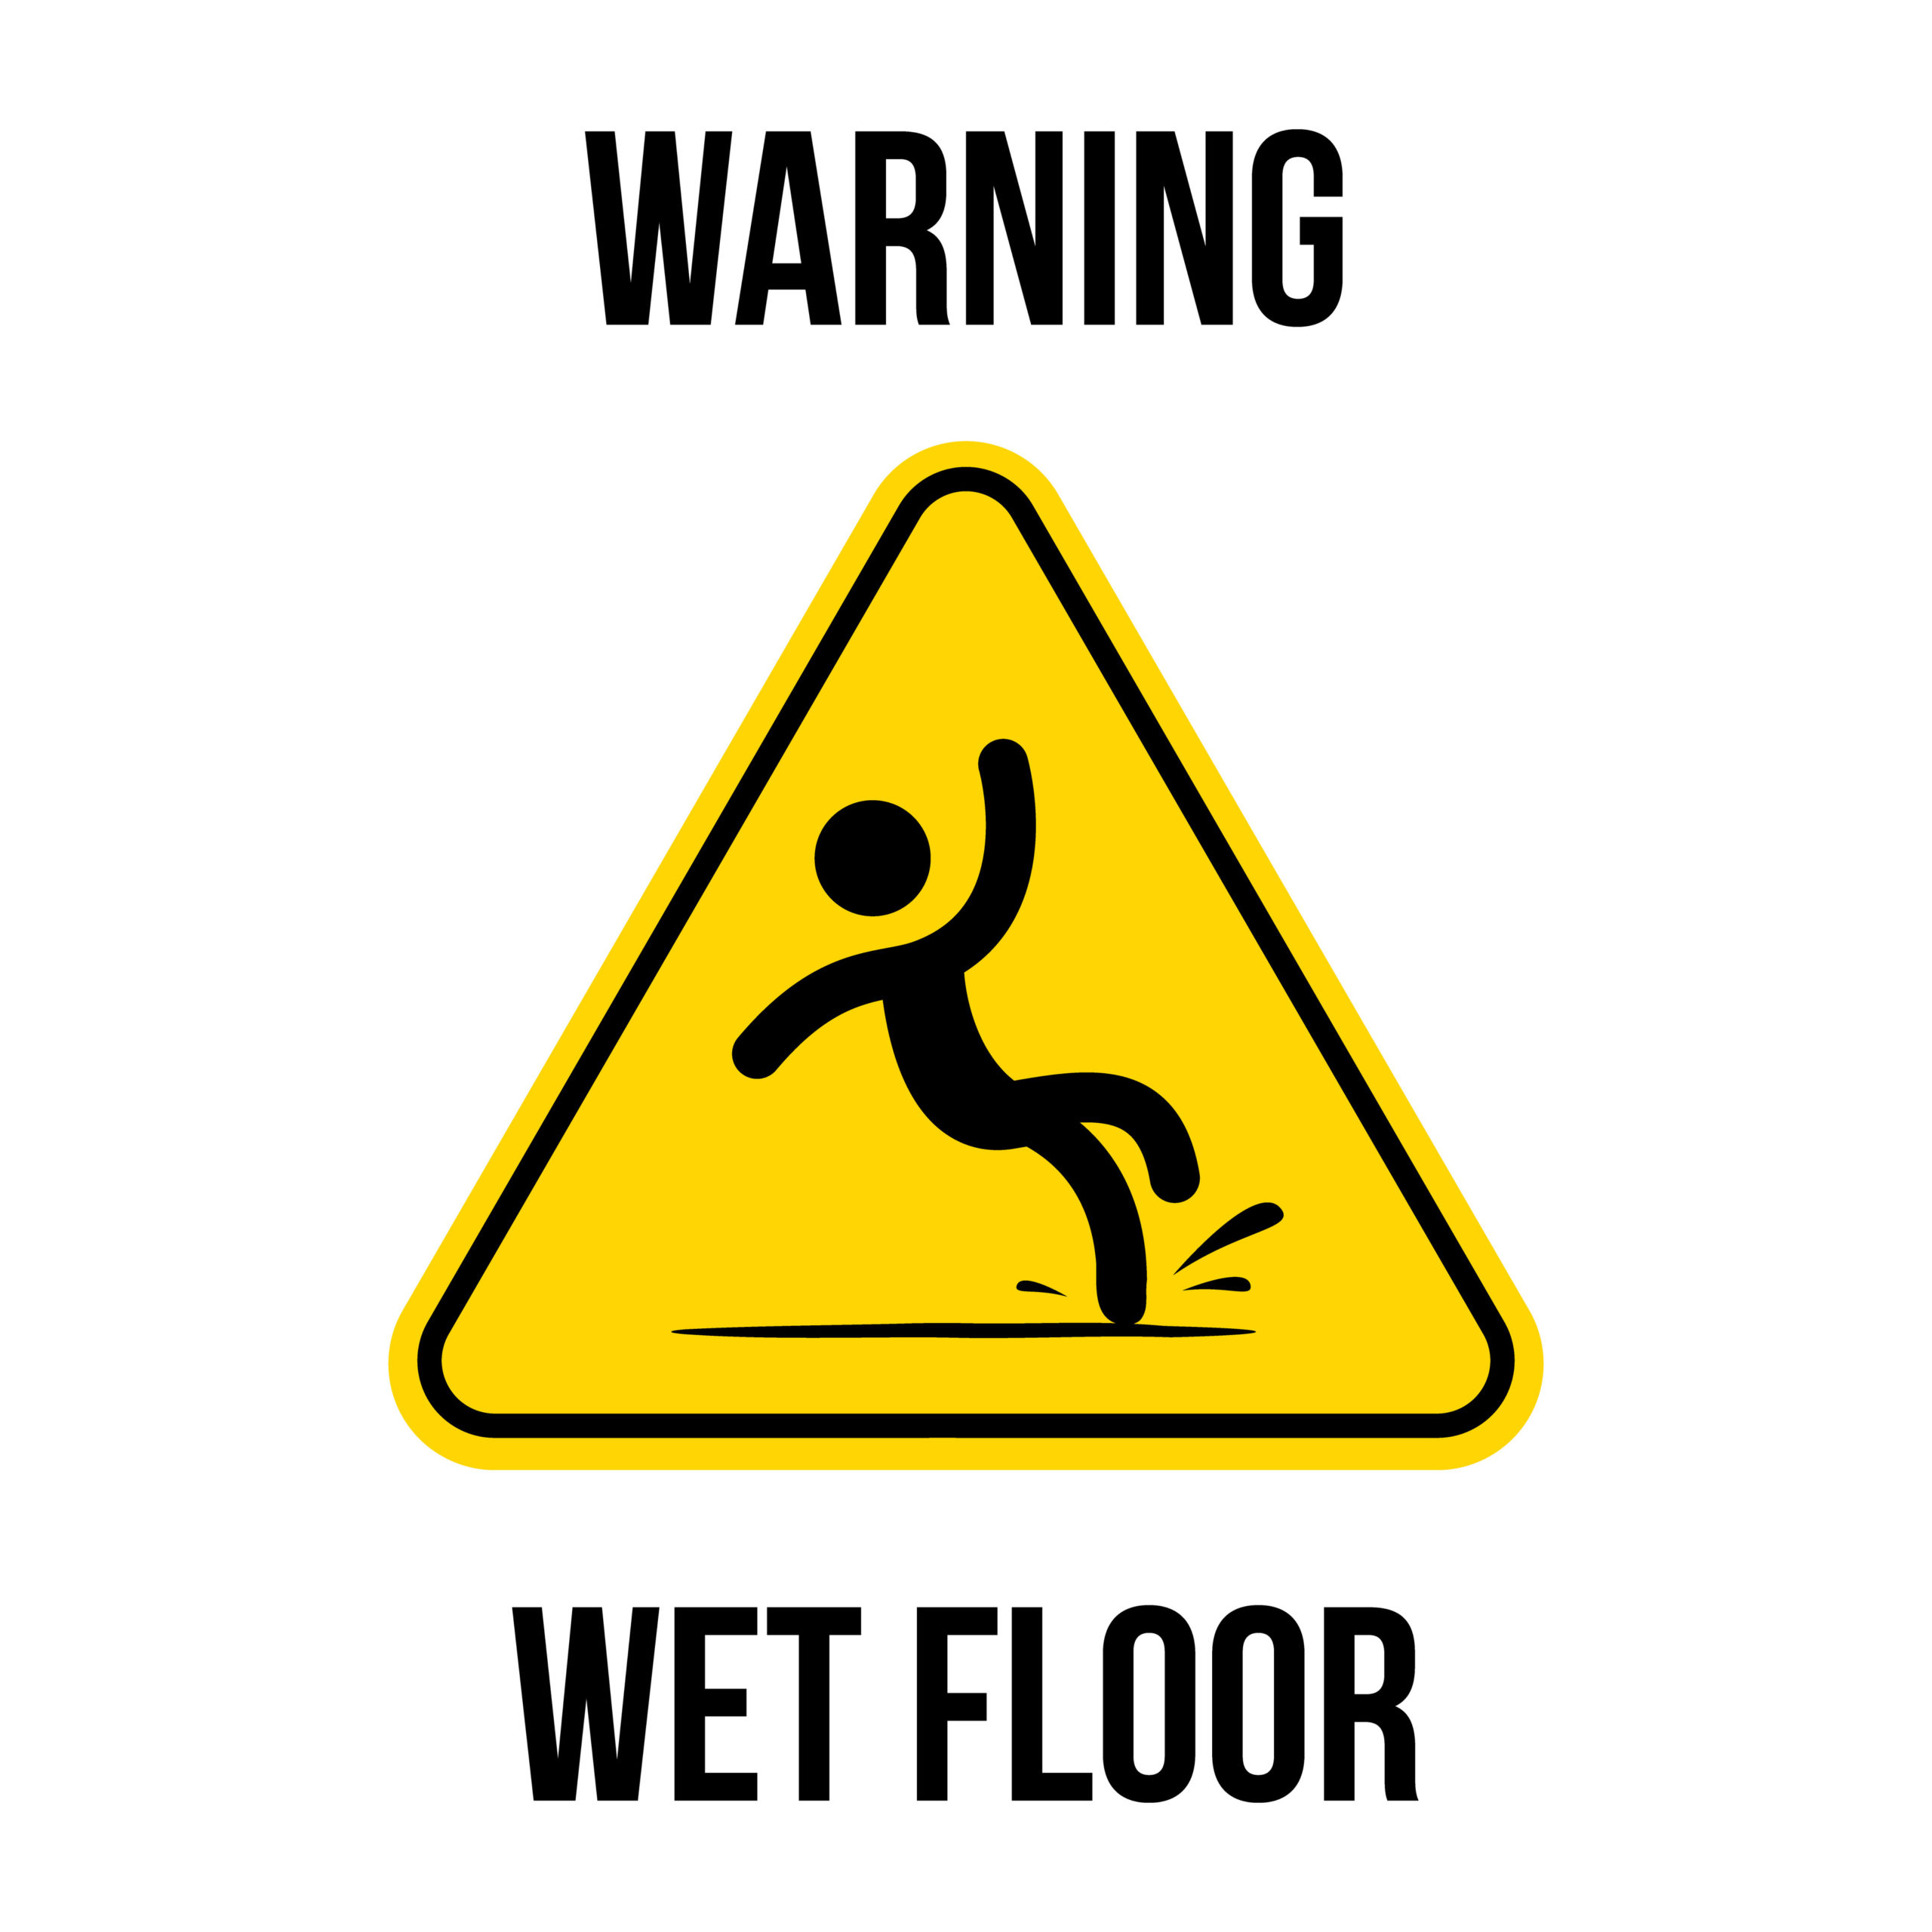 Keep wet floors as they. Warning wet Floor. Табличка Caution wet Floor. Знак безопасности осторожно скользко. Знак желтый треугольник с падающим человеком.